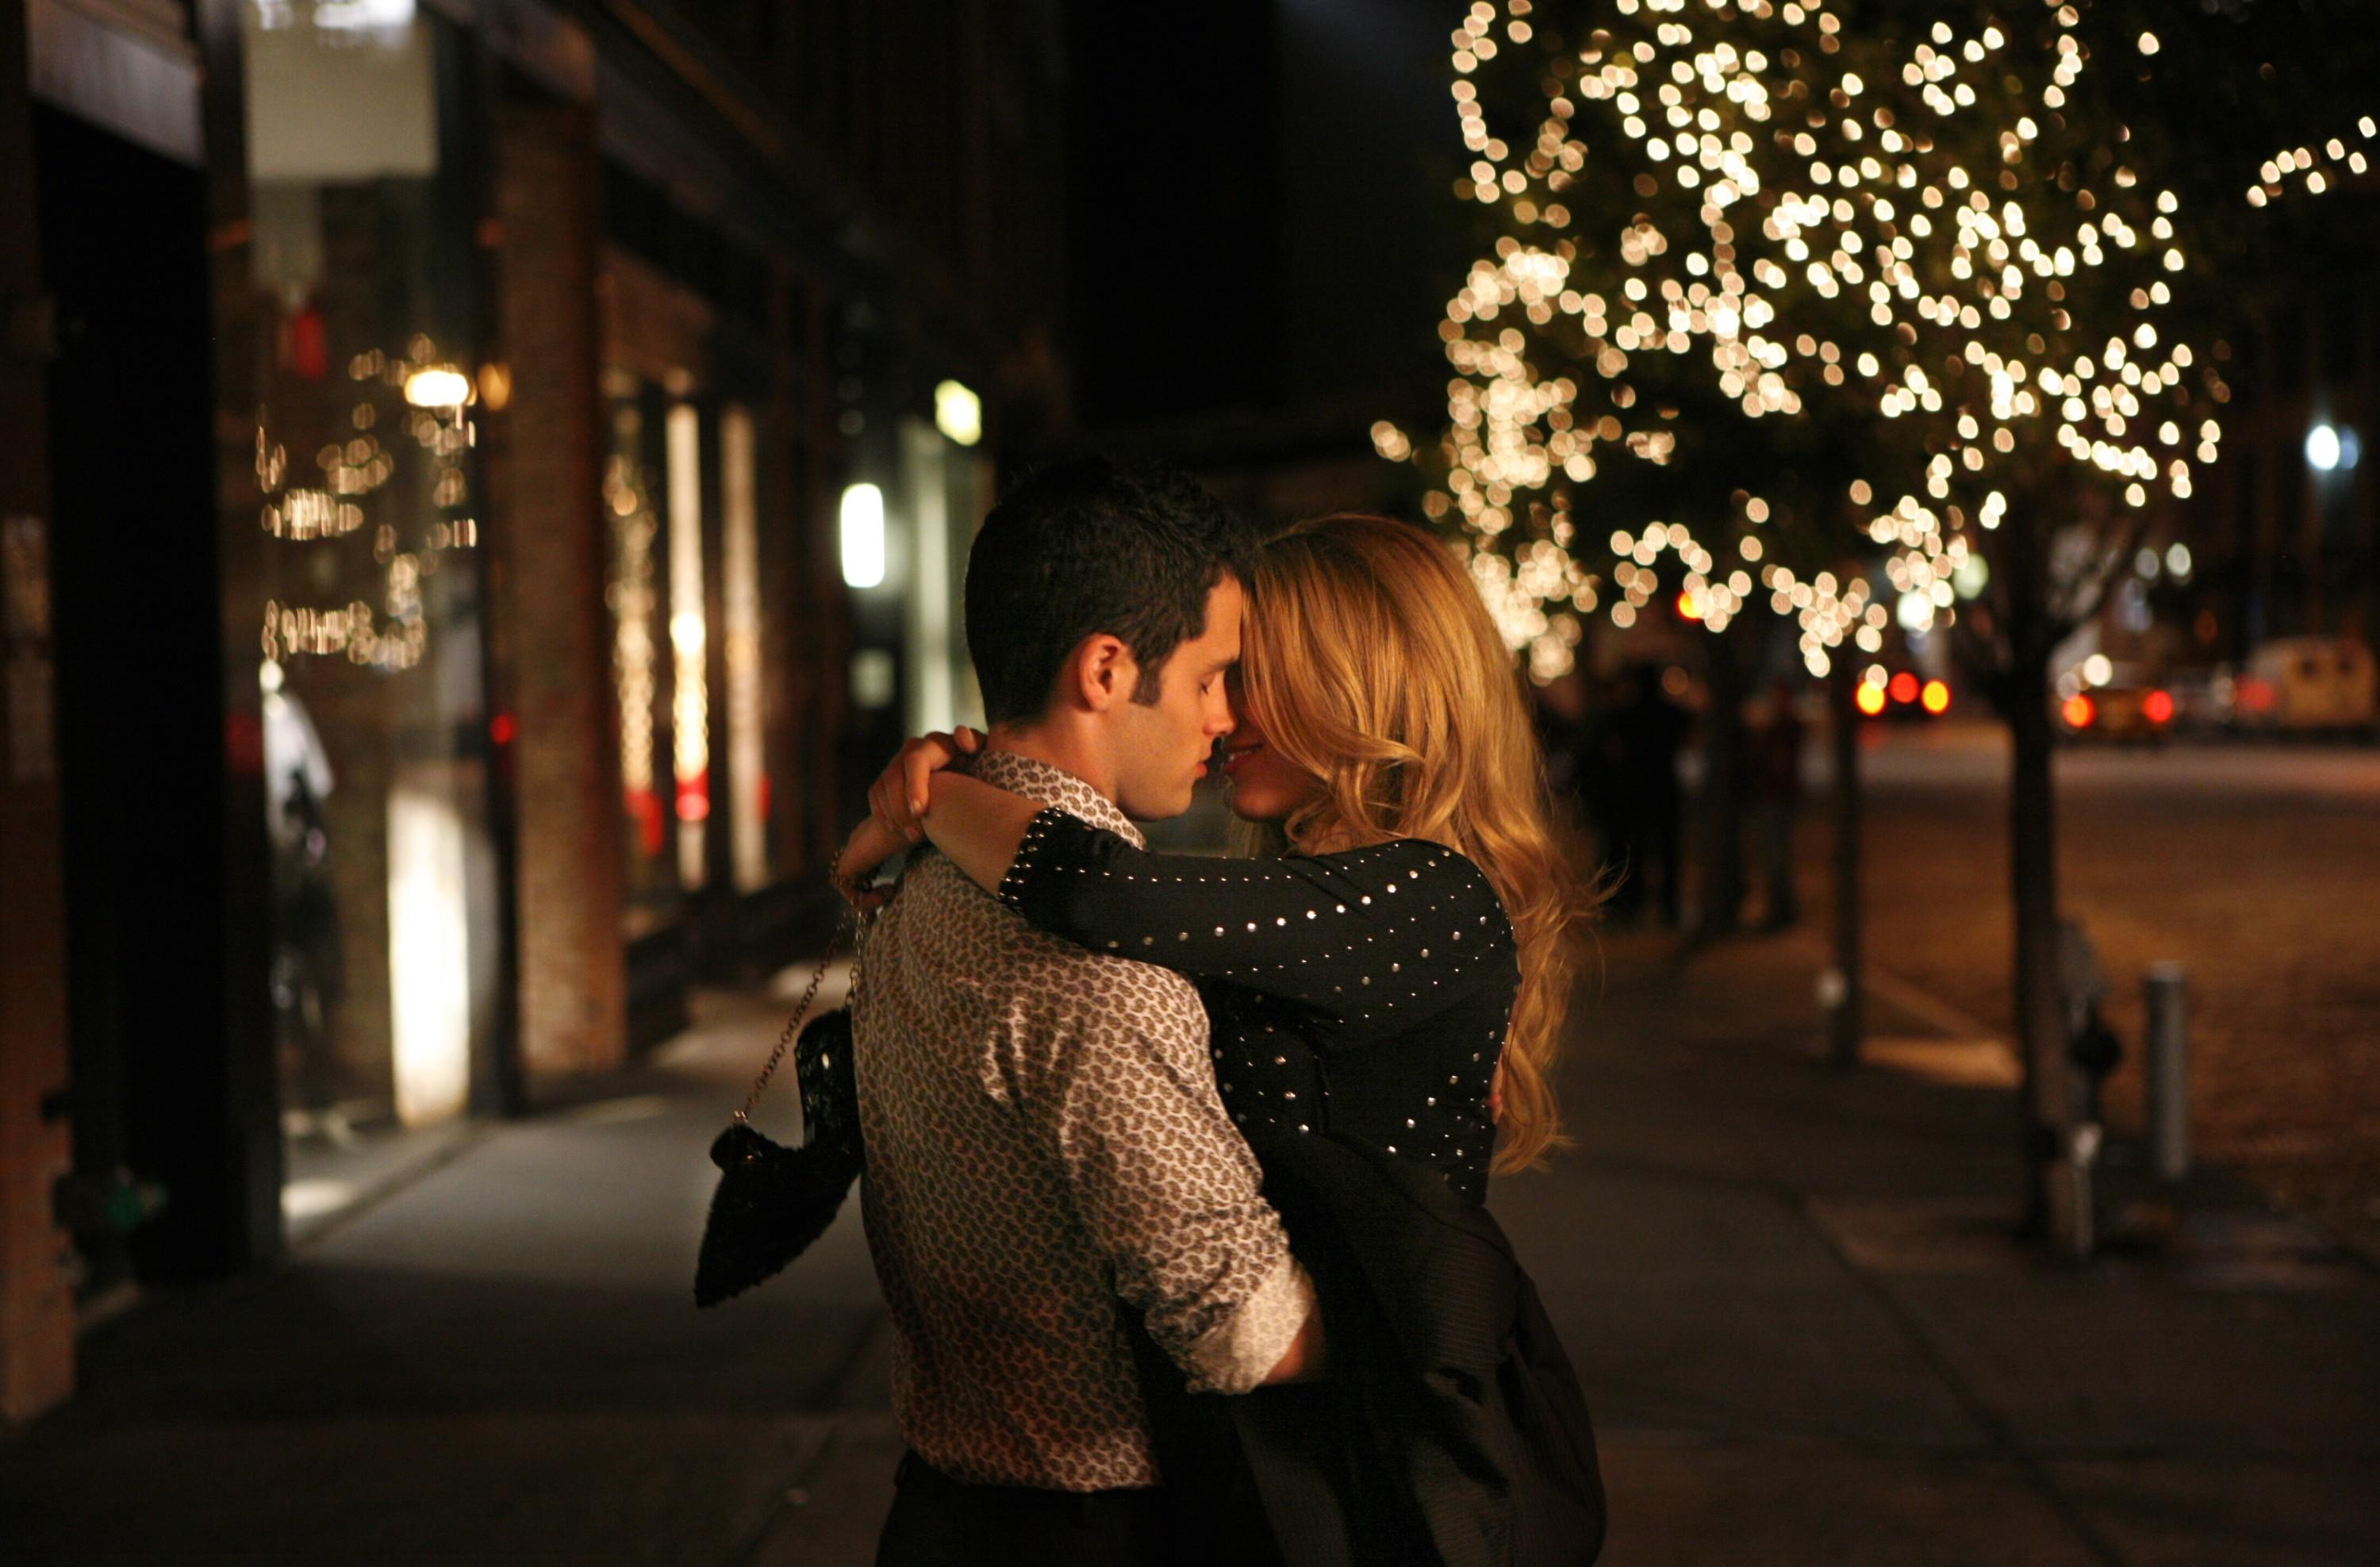 Золотых твоих волос. Влюбленная пара вечером. Романтическая встреча влюбленных. Влюбленные на улице. Поцелуй вечером на улице.